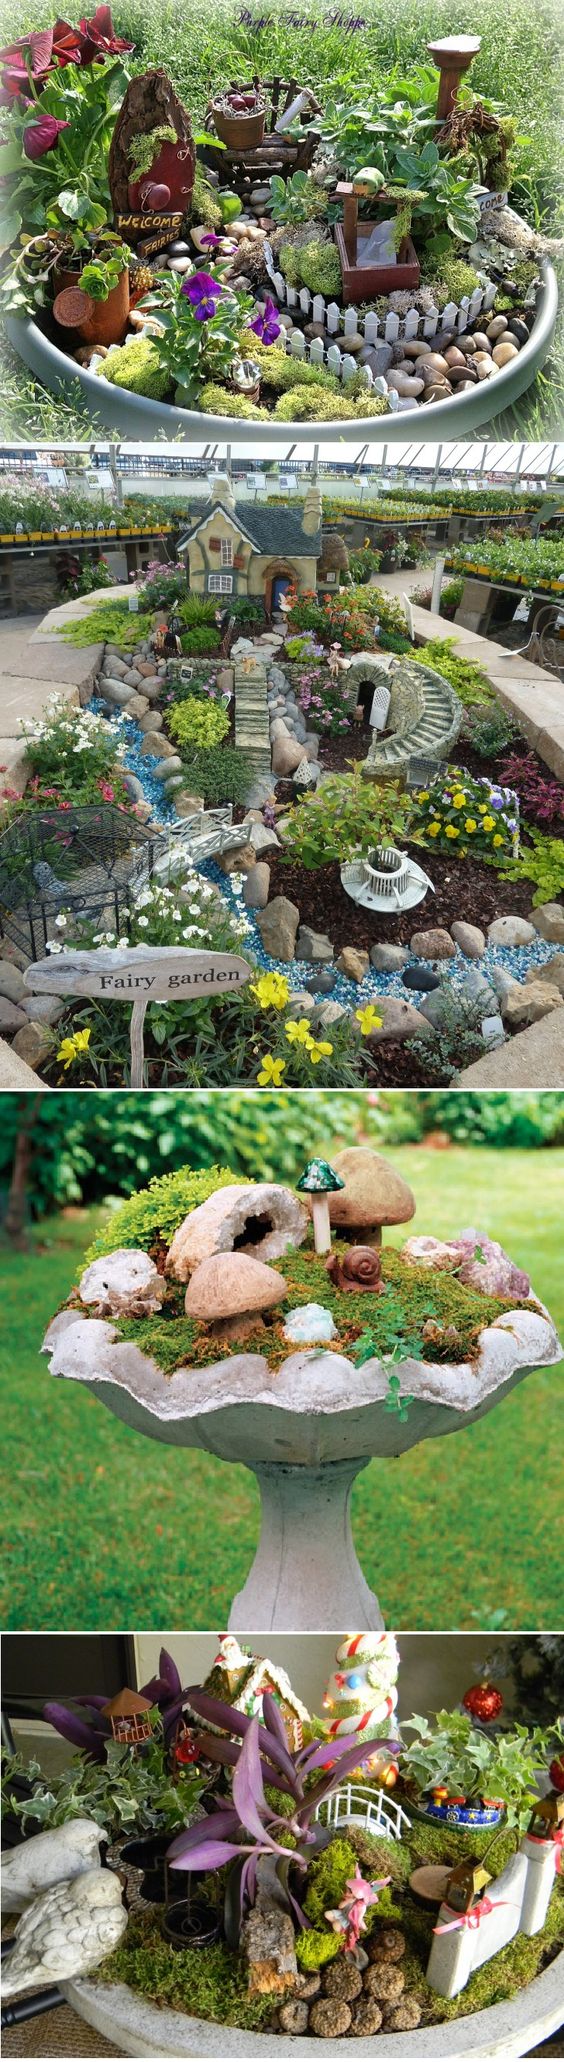 Mini Fairy Garden Ideas To Make The Garden Of Your Dreams